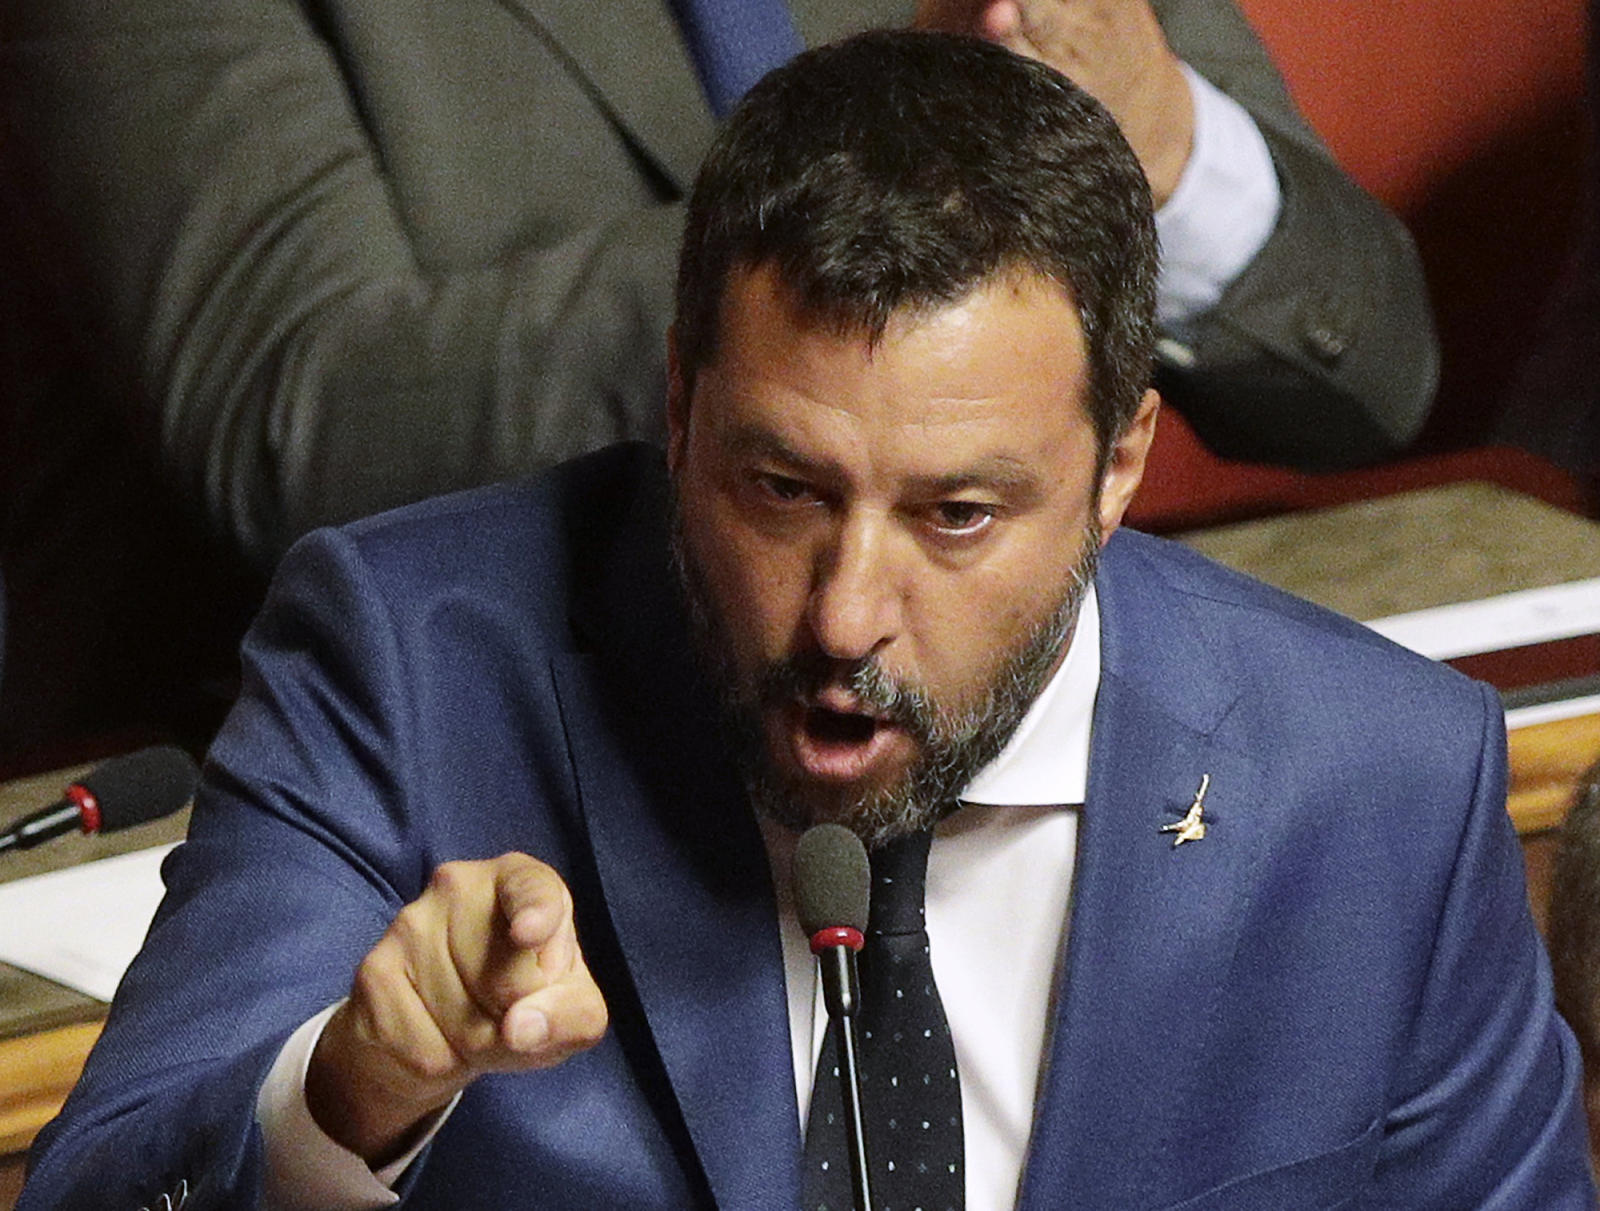 Il leader della Lega italiana Salvini è stato nuovamente preso di mira per i suoi legami con la Russia